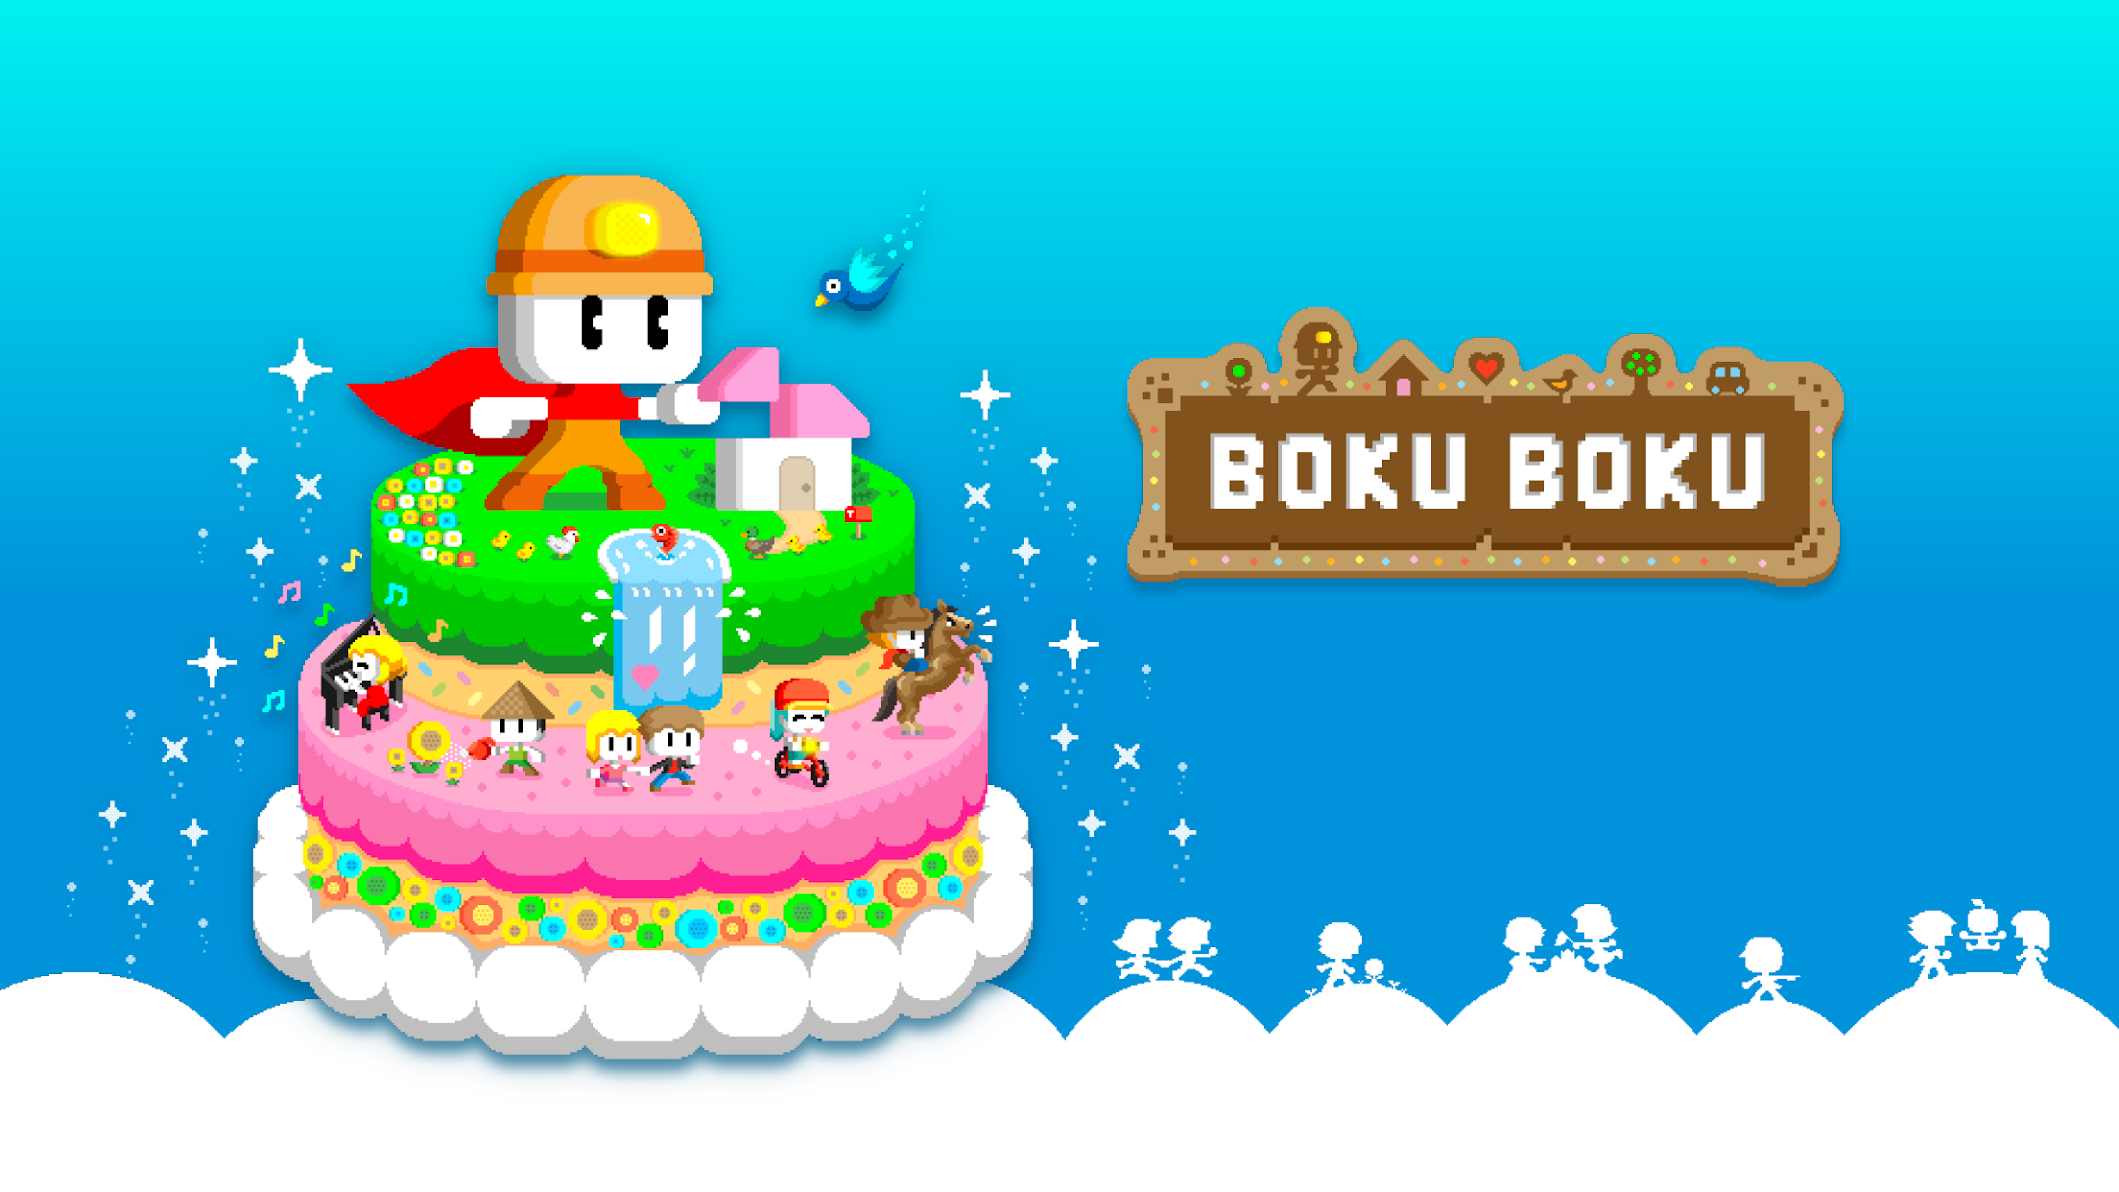 دانلود BOKU BOKU 1.0.209 – بازی شبیه سازی بوکو بوکو اندروید